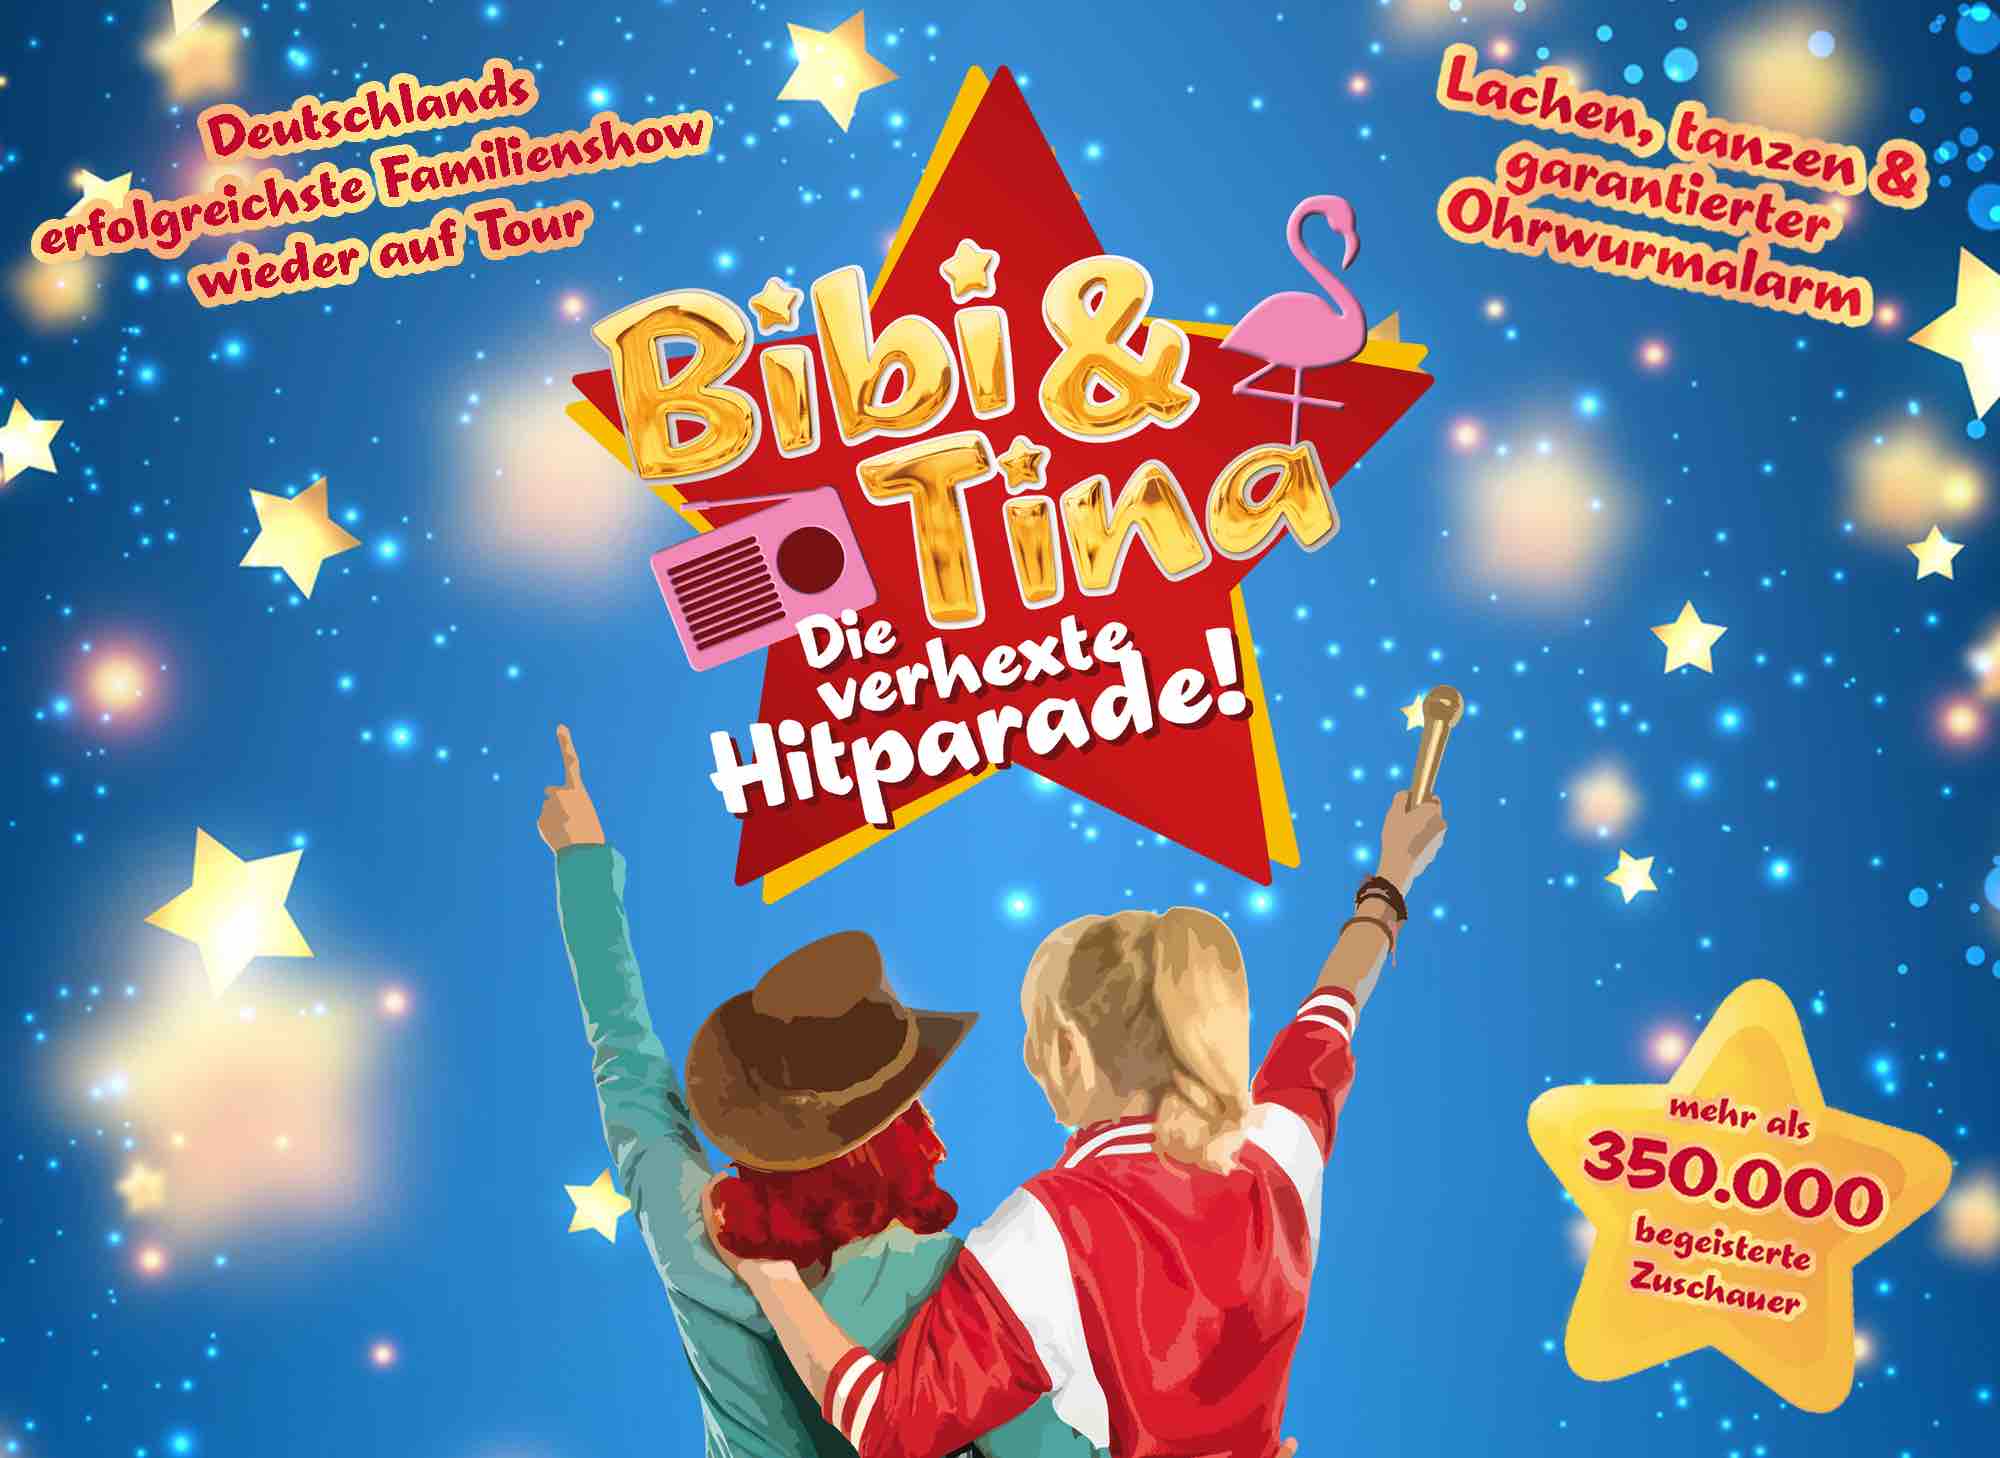 Bibi & Tina - Die verhexte Hitparade / Pressefoto | Freie-Pressemitteilungen.de